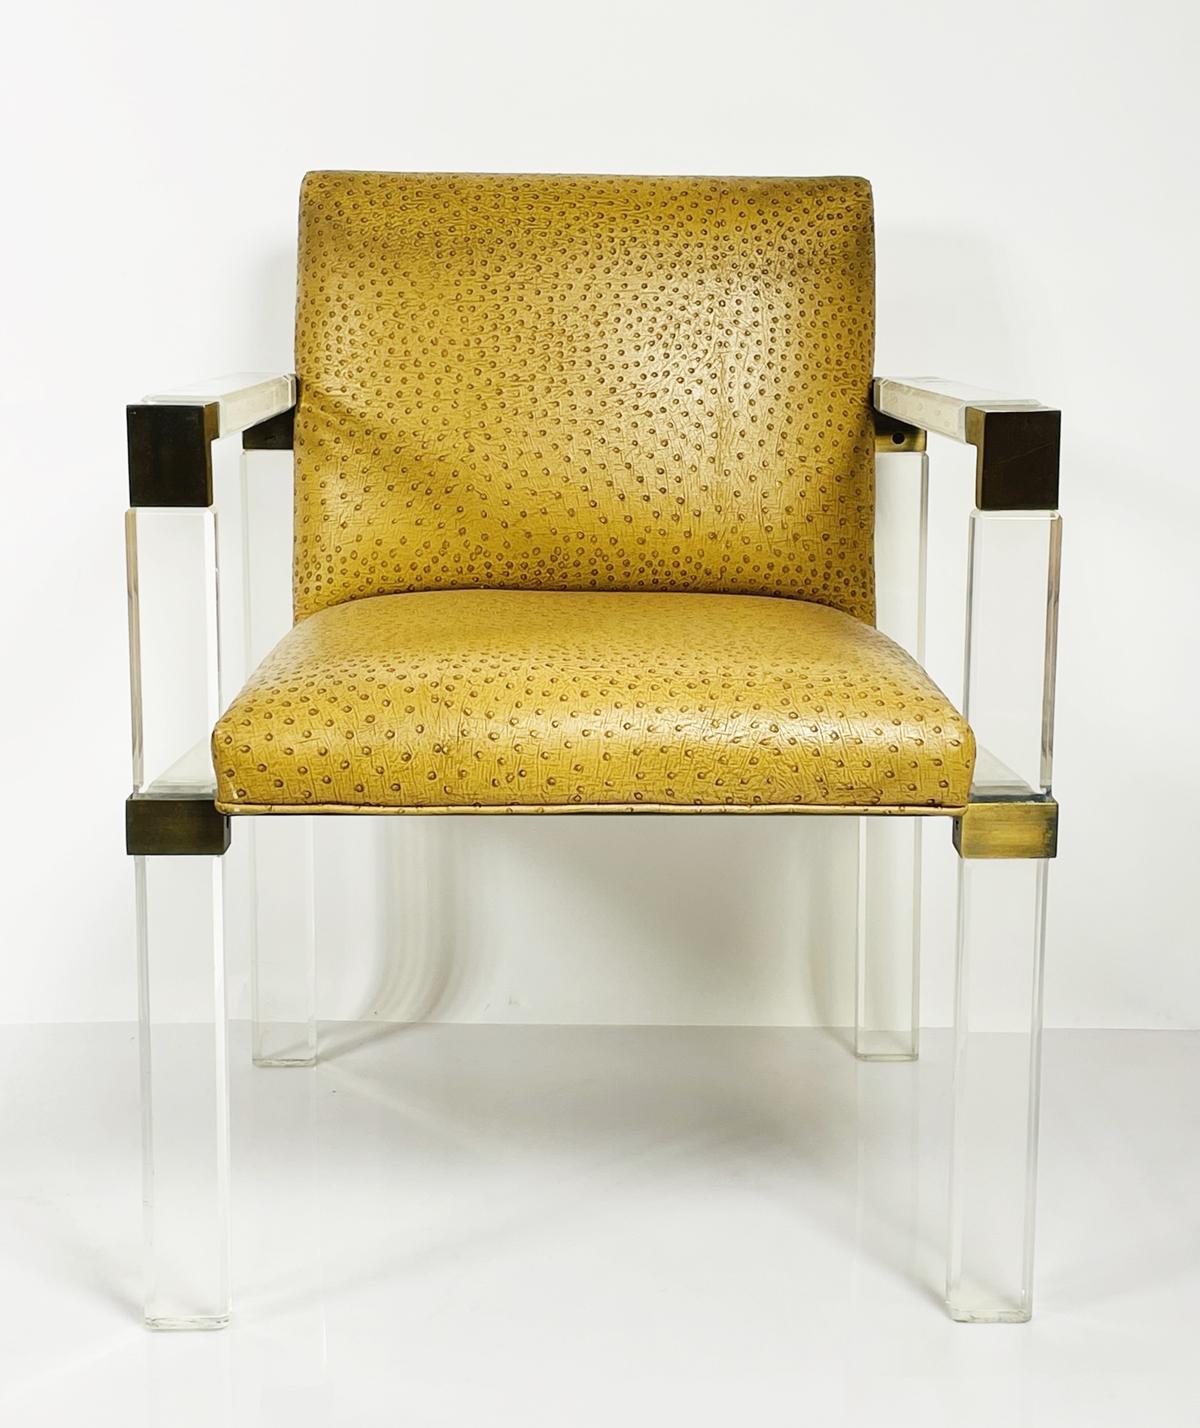 Der Lucite & Brass Lounge Arm Chair von Charles Hollis Jones ist ein atemberaubendes Möbelstück, das mit seinem eleganten und modernen Design jeden Raum aufwertet. Der Stuhl zeichnet sich durch eine einzigartige Kombination aus Lucite und Messing